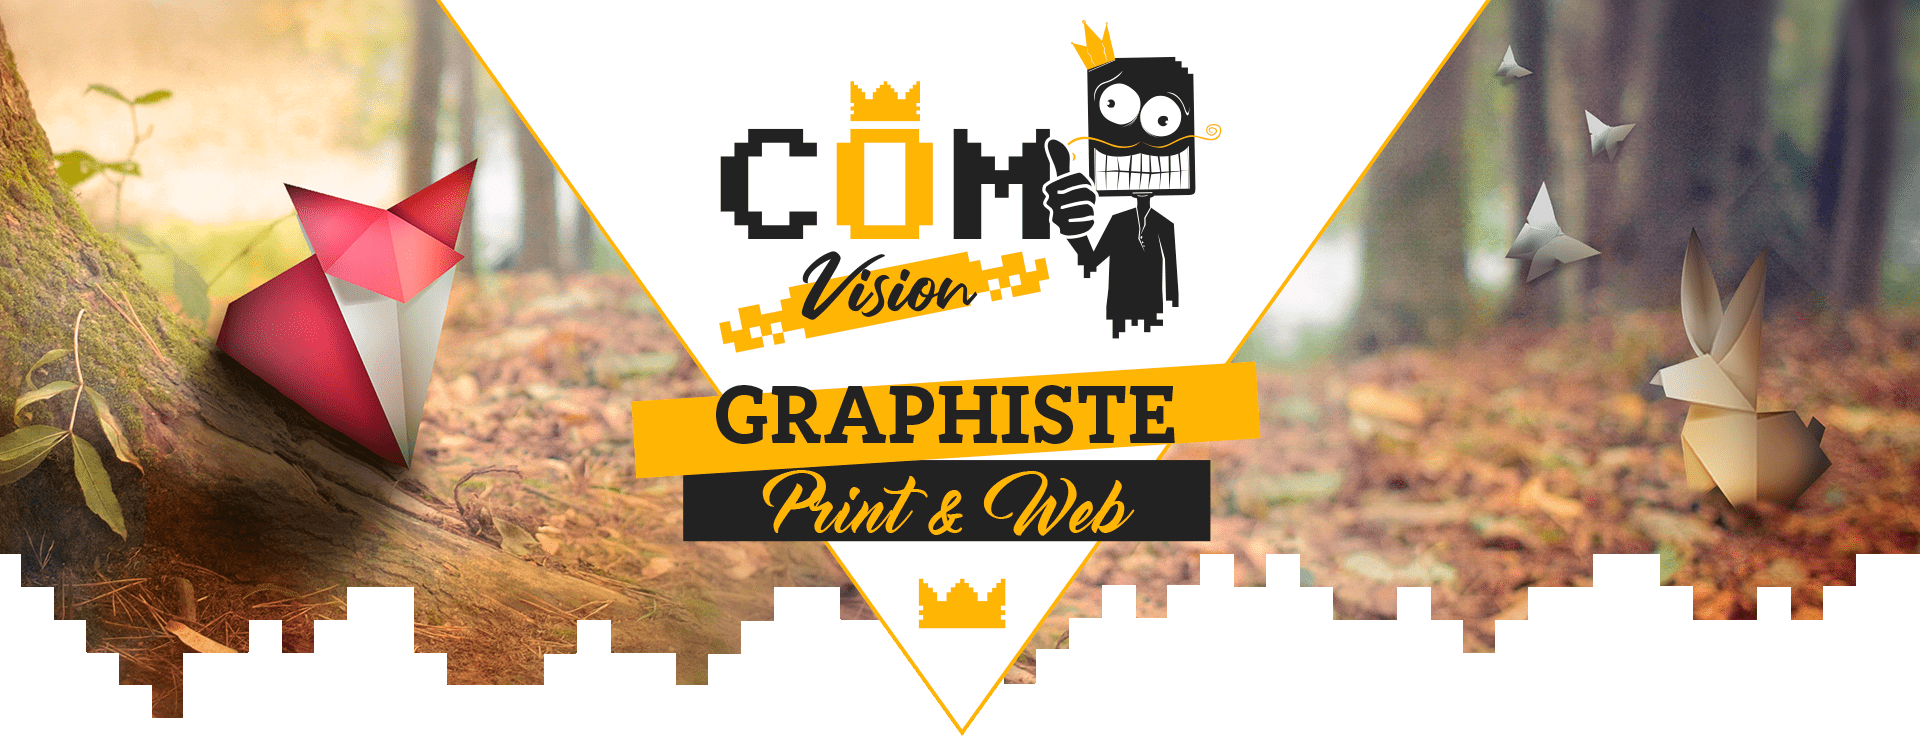 Com1vision_graphiste_création_illustration